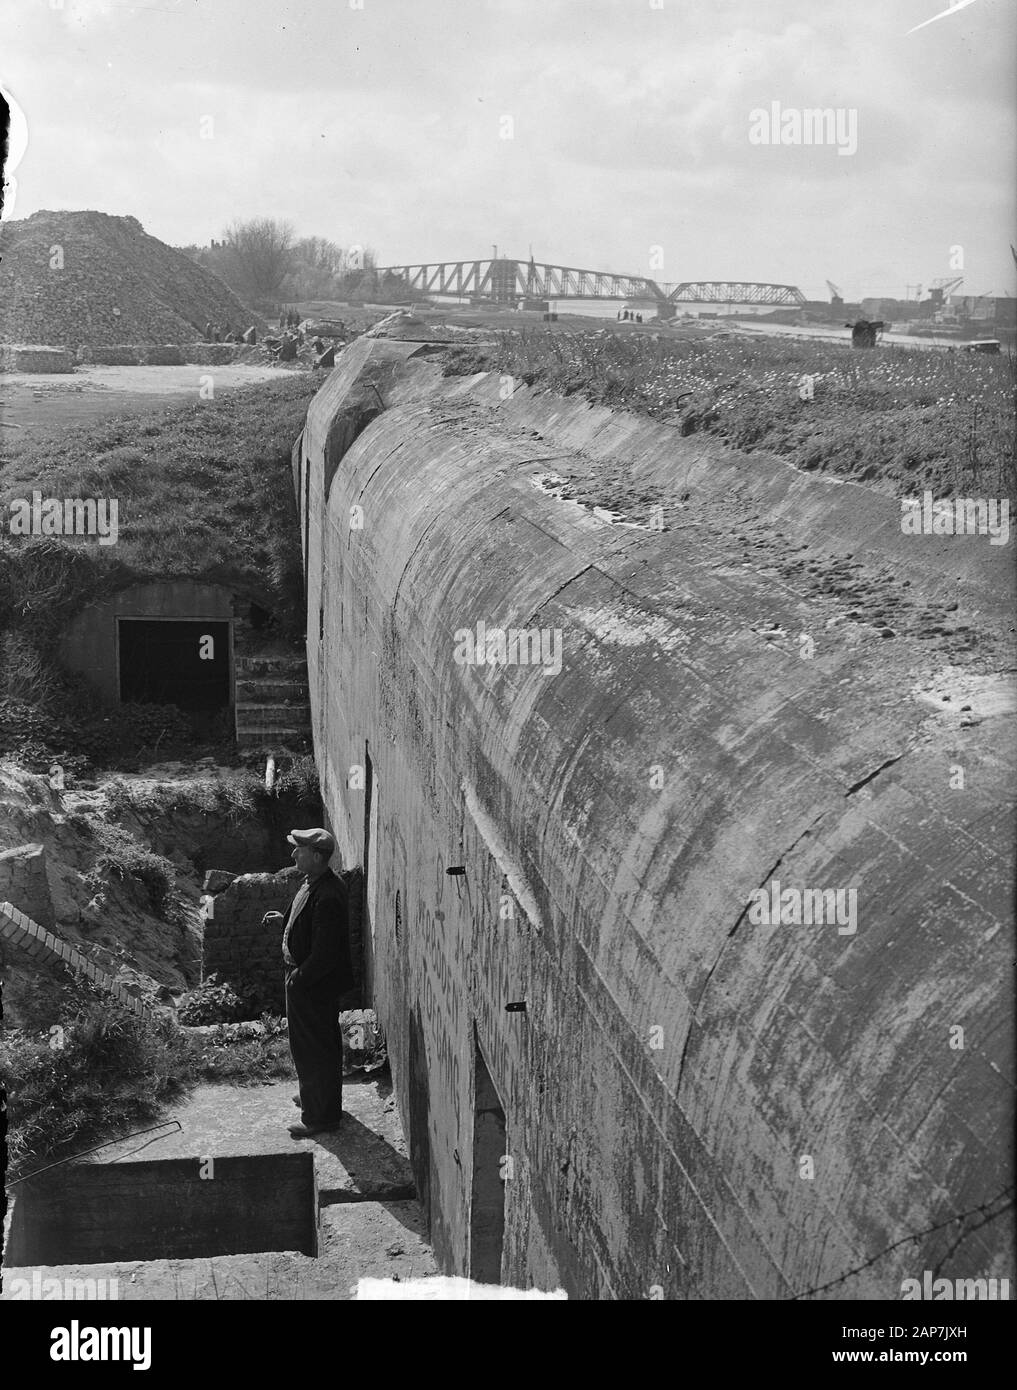 À n'importe quel élargissement du canal de la mer du Nord reste Date : avril 24, 1949 Mots-clés : Expansion Banque D'Images